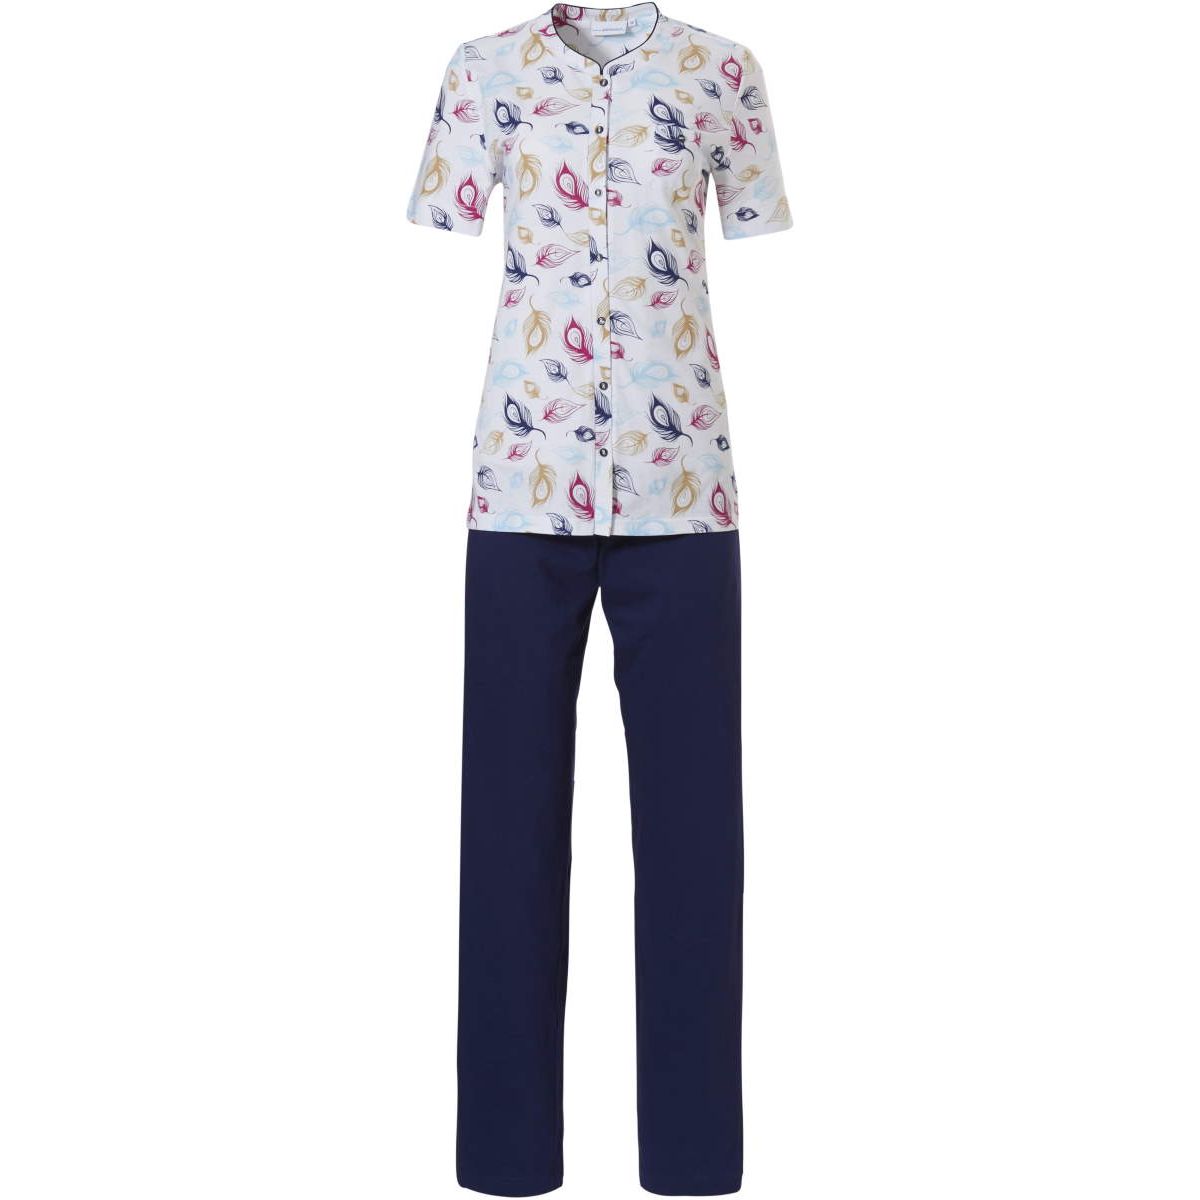 Pastunette doorknoop pyjama met veertjes - 20221-194-6 - blauw